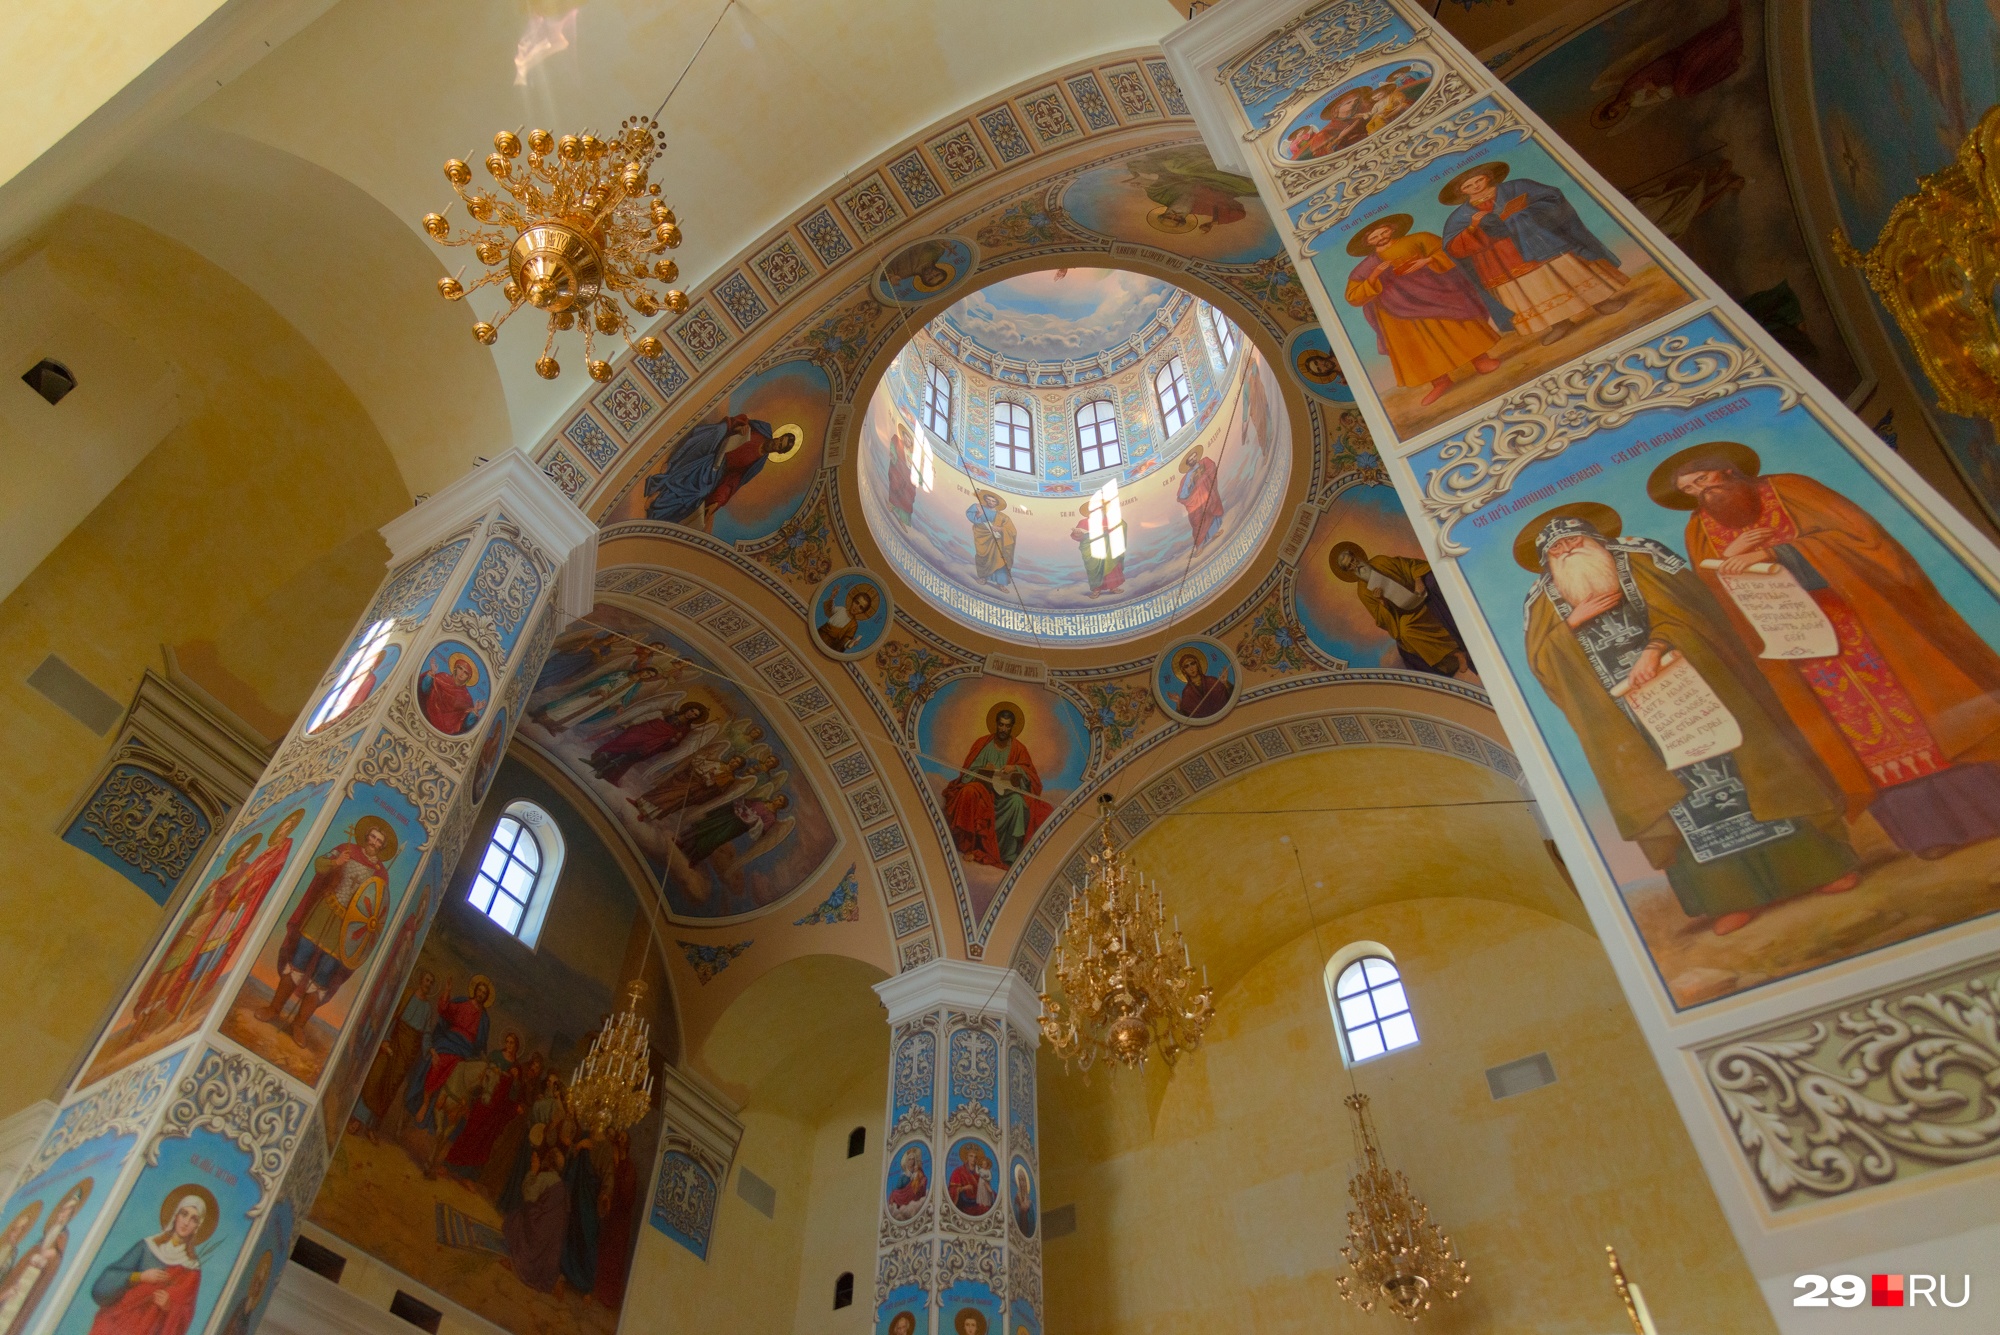 Иконописцы, которых приглашают для росписи храма, — не из Архангельской области